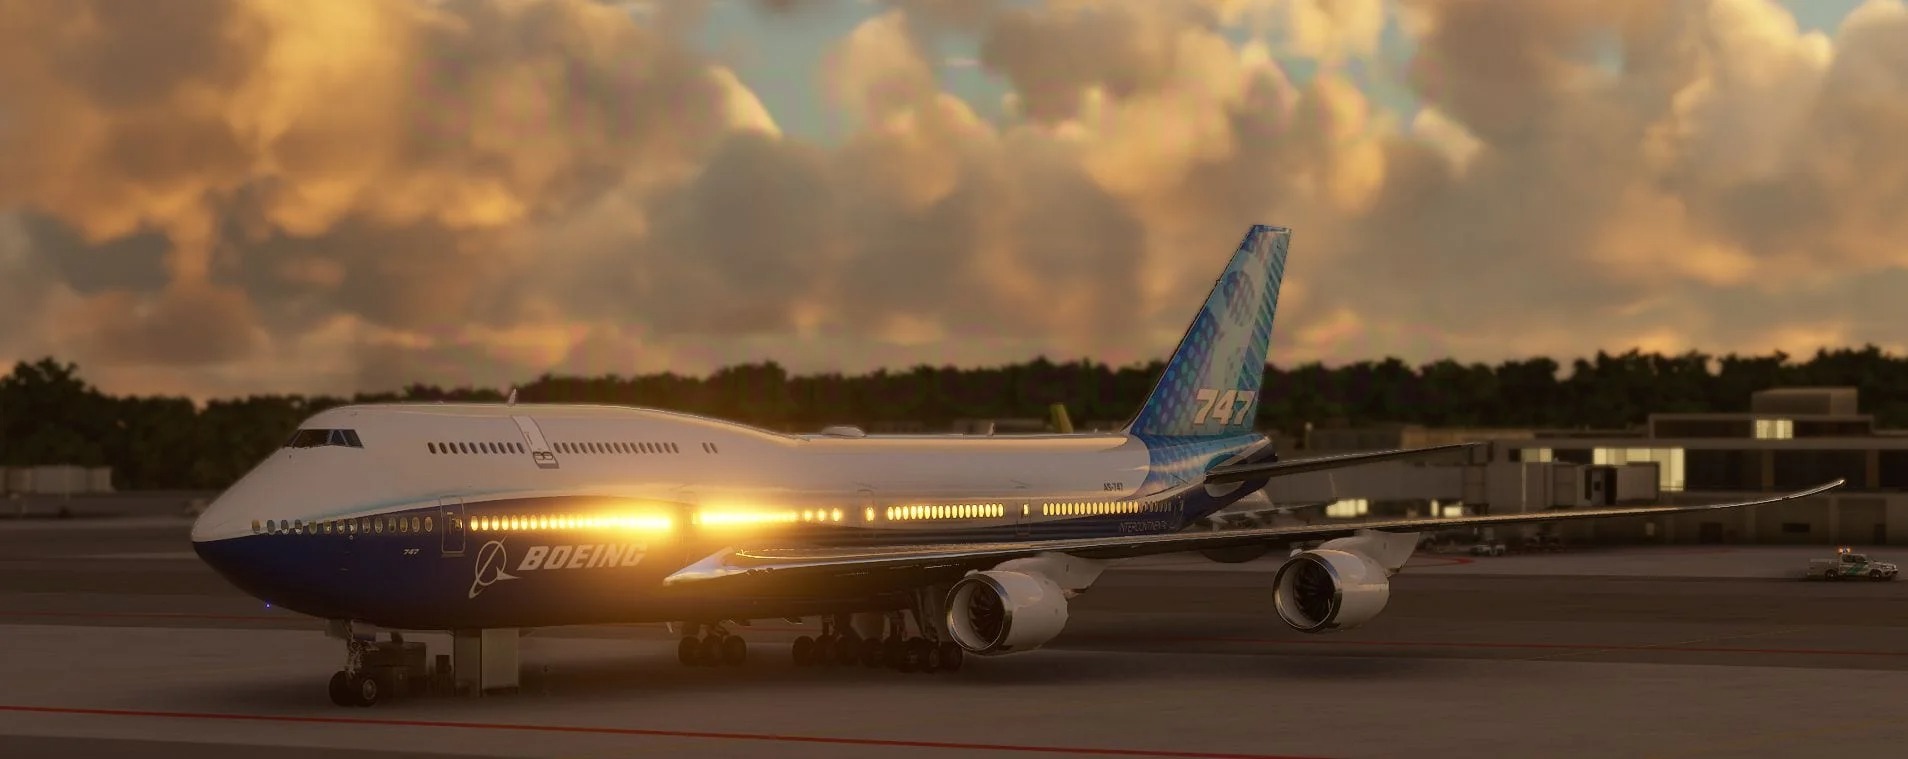 747亮相 《微软飞行模拟》又一批新截图公布